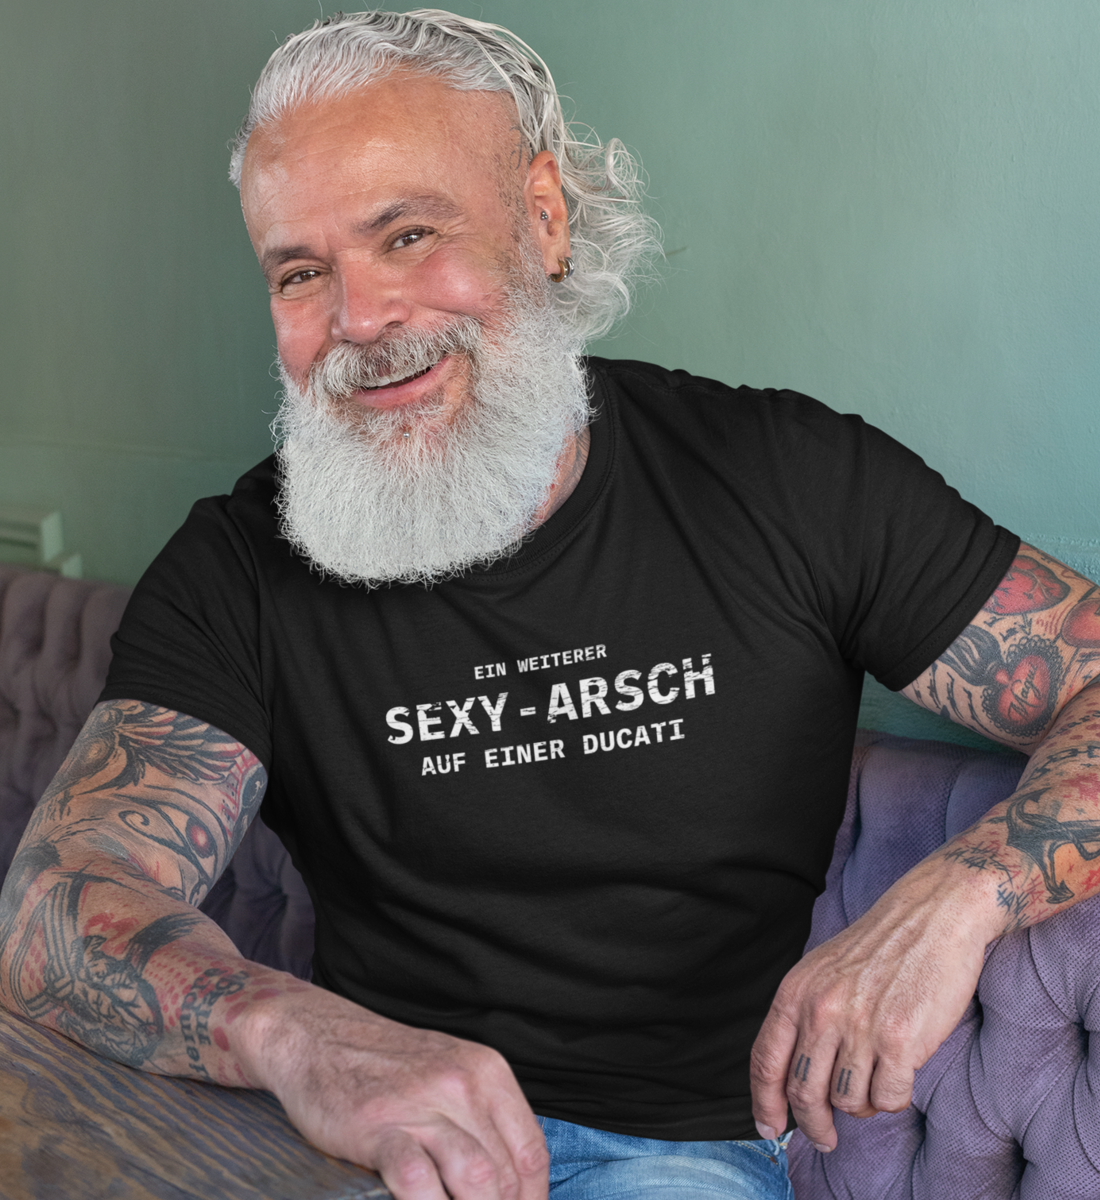 Sexy-Arsch auf einer Ducati - Herren T-Shirt